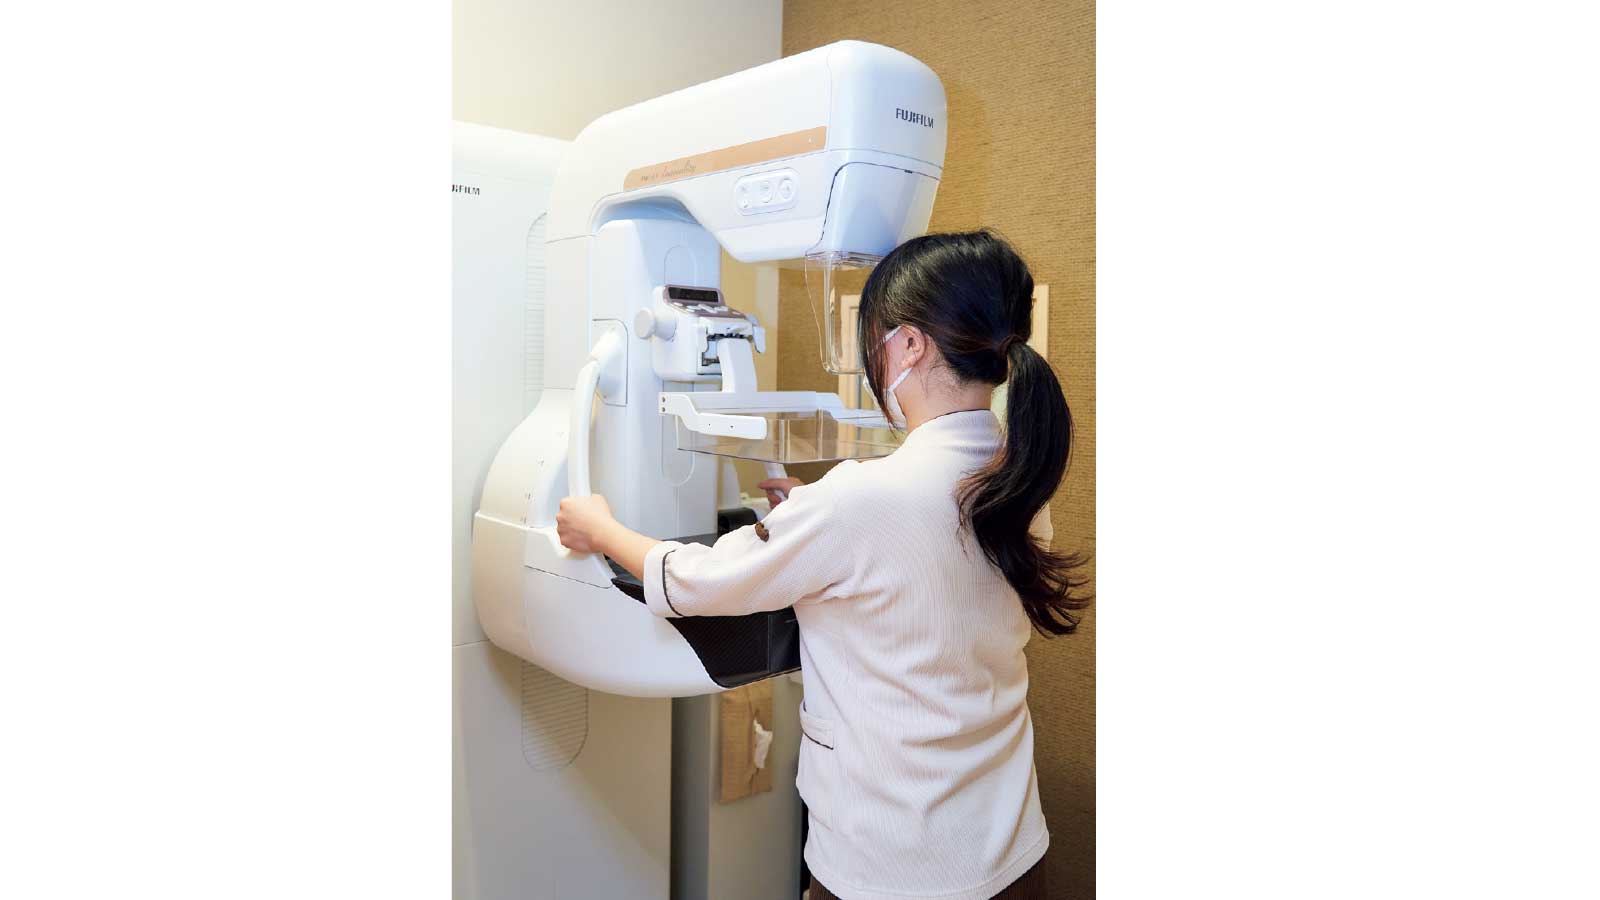 乳がん検診としてマンモグラフィと乳腺エコーを行う。乳房専用のX線撮影で乳がんの初期症状にあたる微細石灰化を調べる。